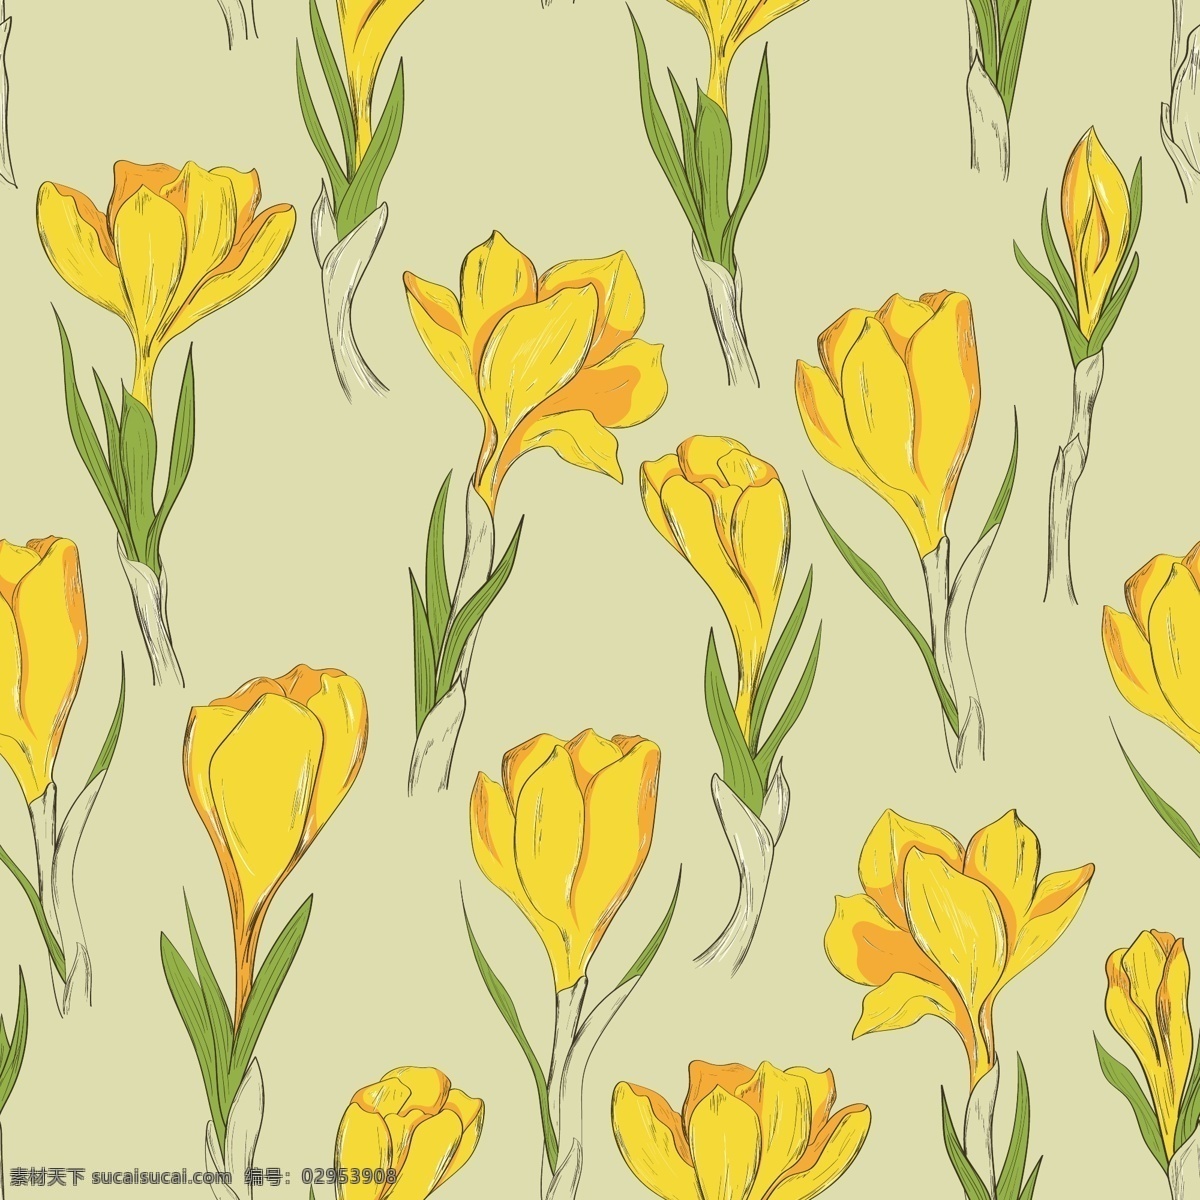 粉黄色 绿叶 平面素材 设计素材 矢量素材 水彩 鲜花 手绘 黄色 花朵 背景 矢量